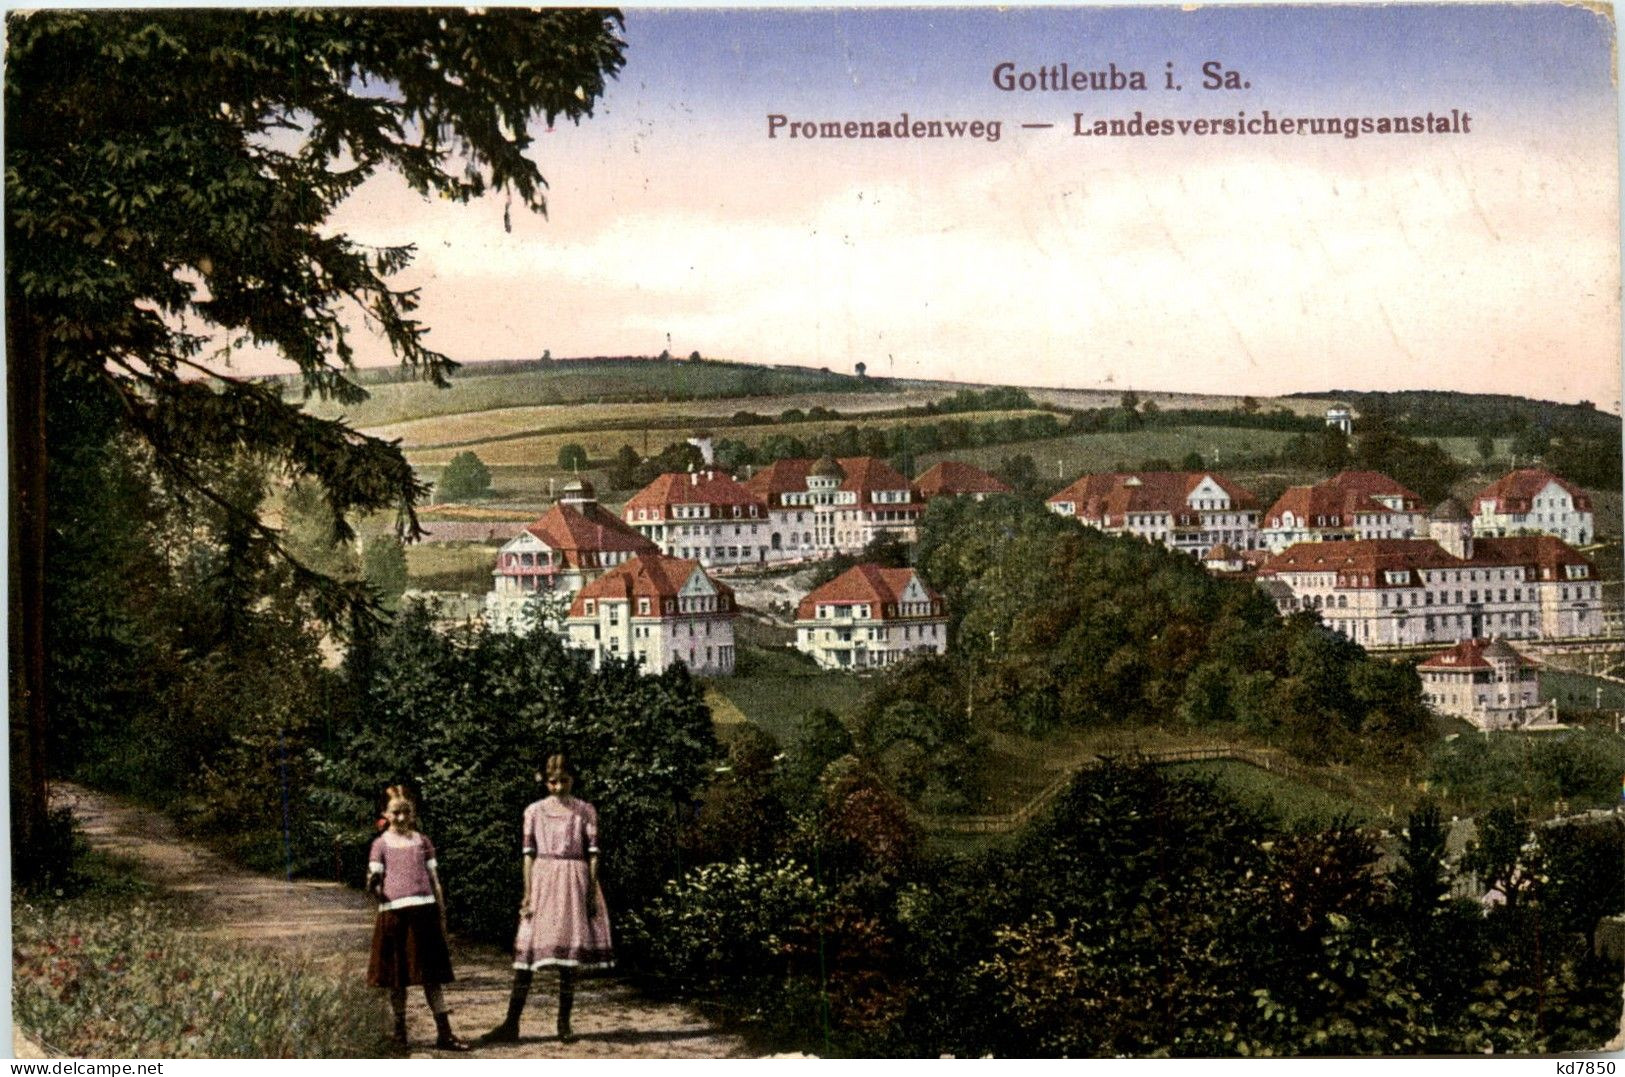 Gottleuba - Promenadenweg - Bad Gottleuba-Berggiesshuebel